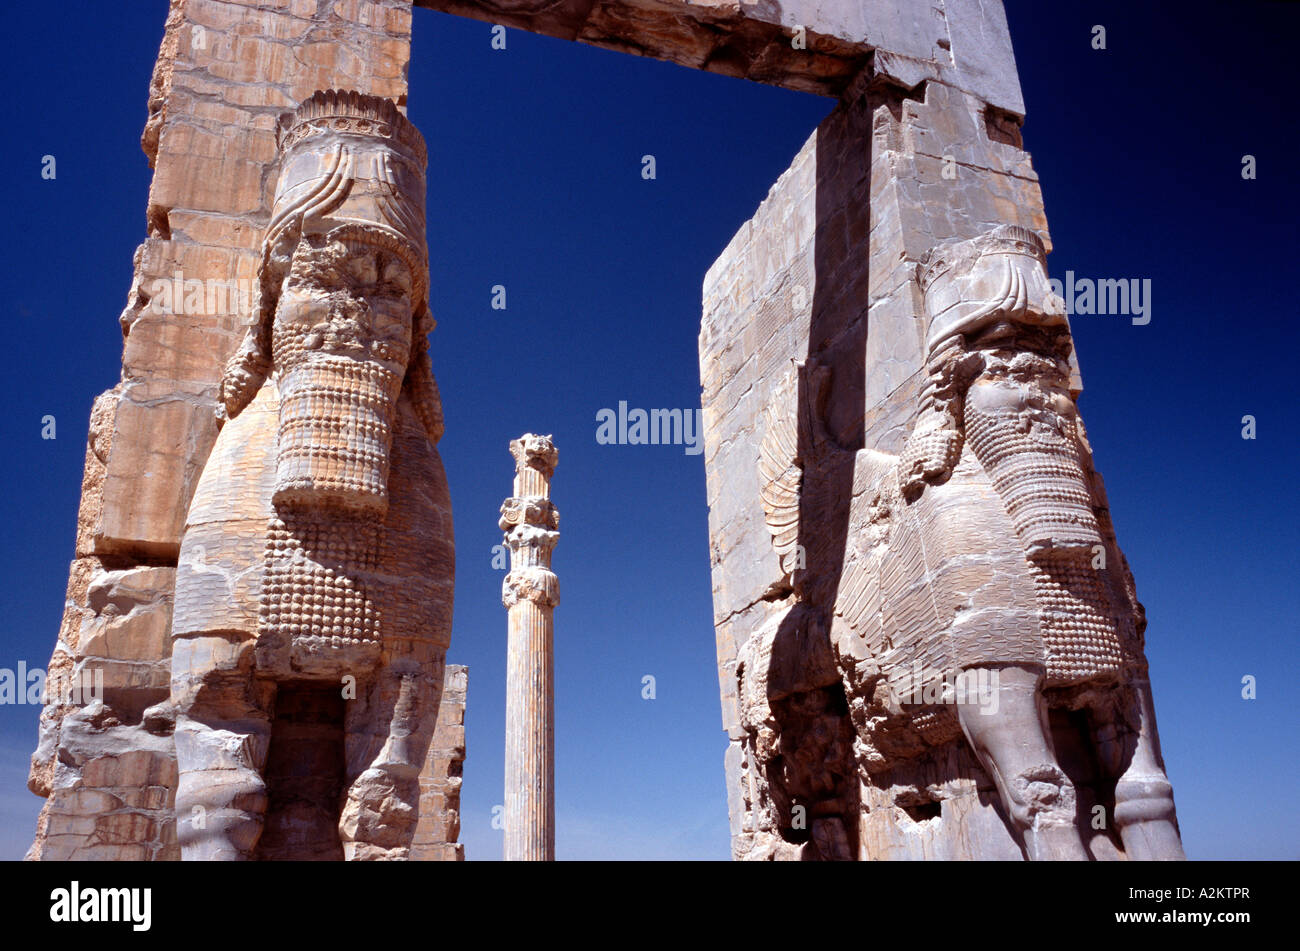 Aprile 14, 2006 - La porta di tutte le nazioni, ingresso alla città antica di Persepolis (Takt-e- Jamshid) esterno iraniane di Shiraz. Foto Stock